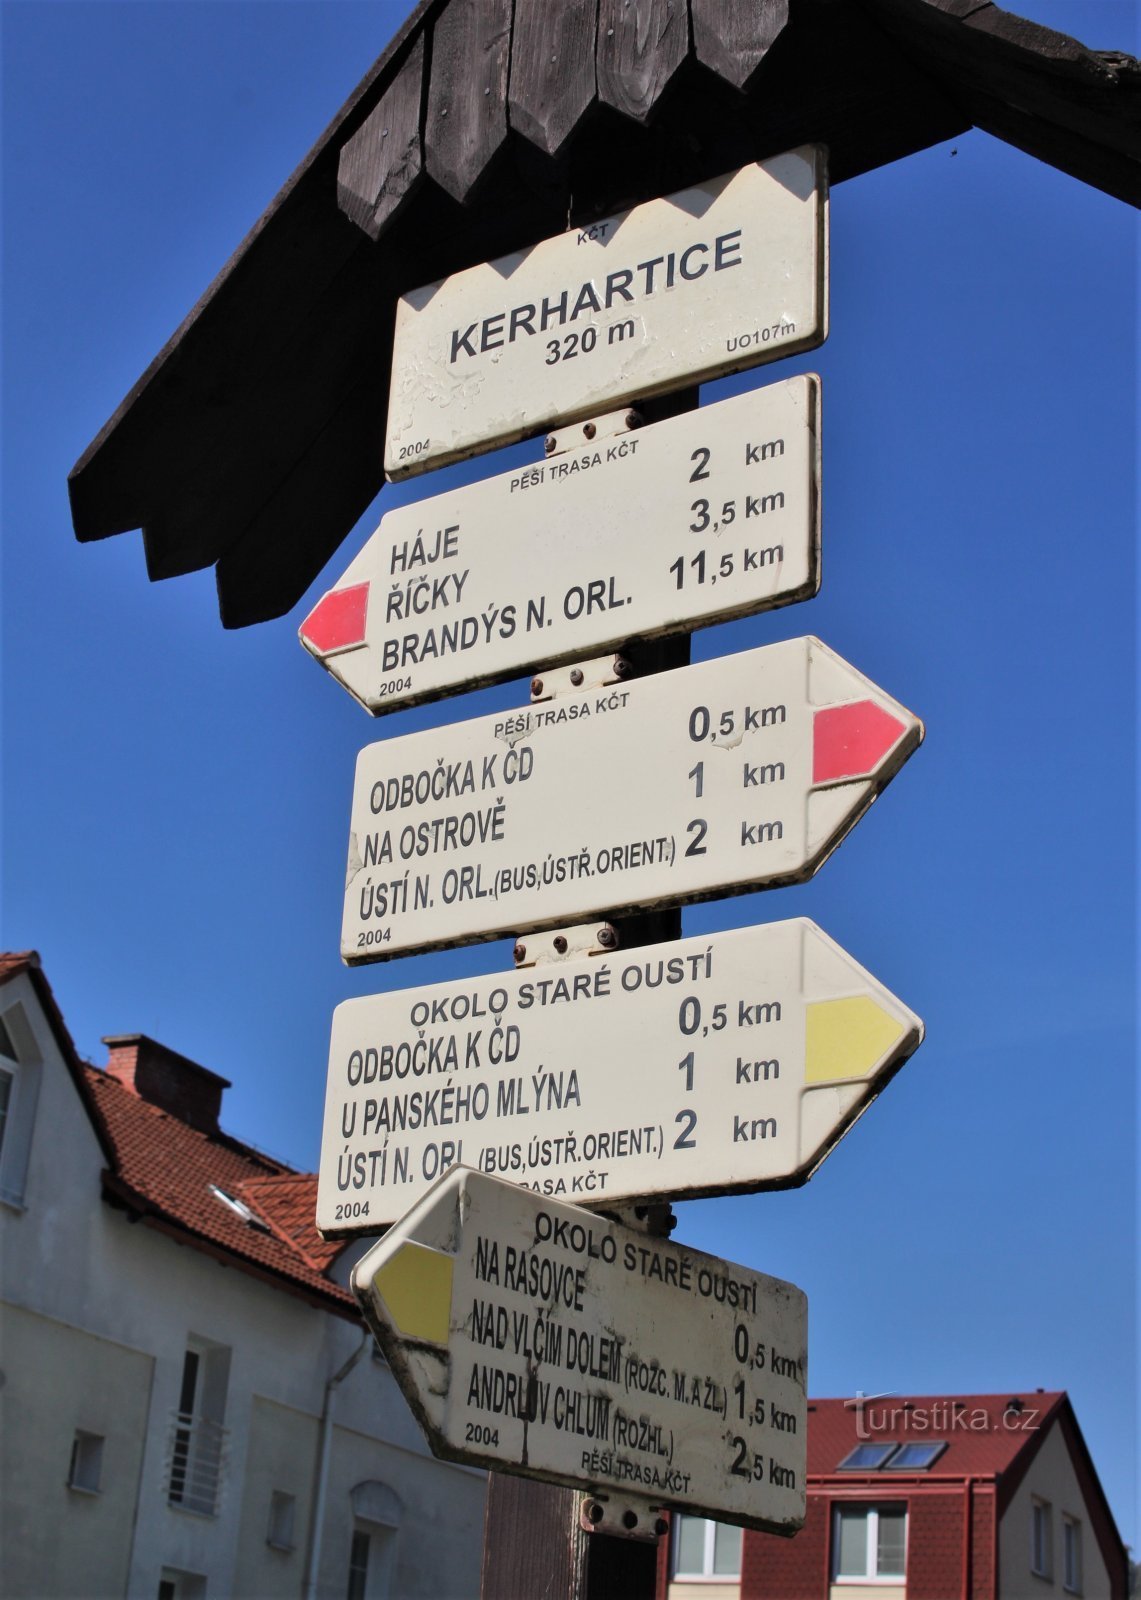 Kerhartice 旅游十字路口